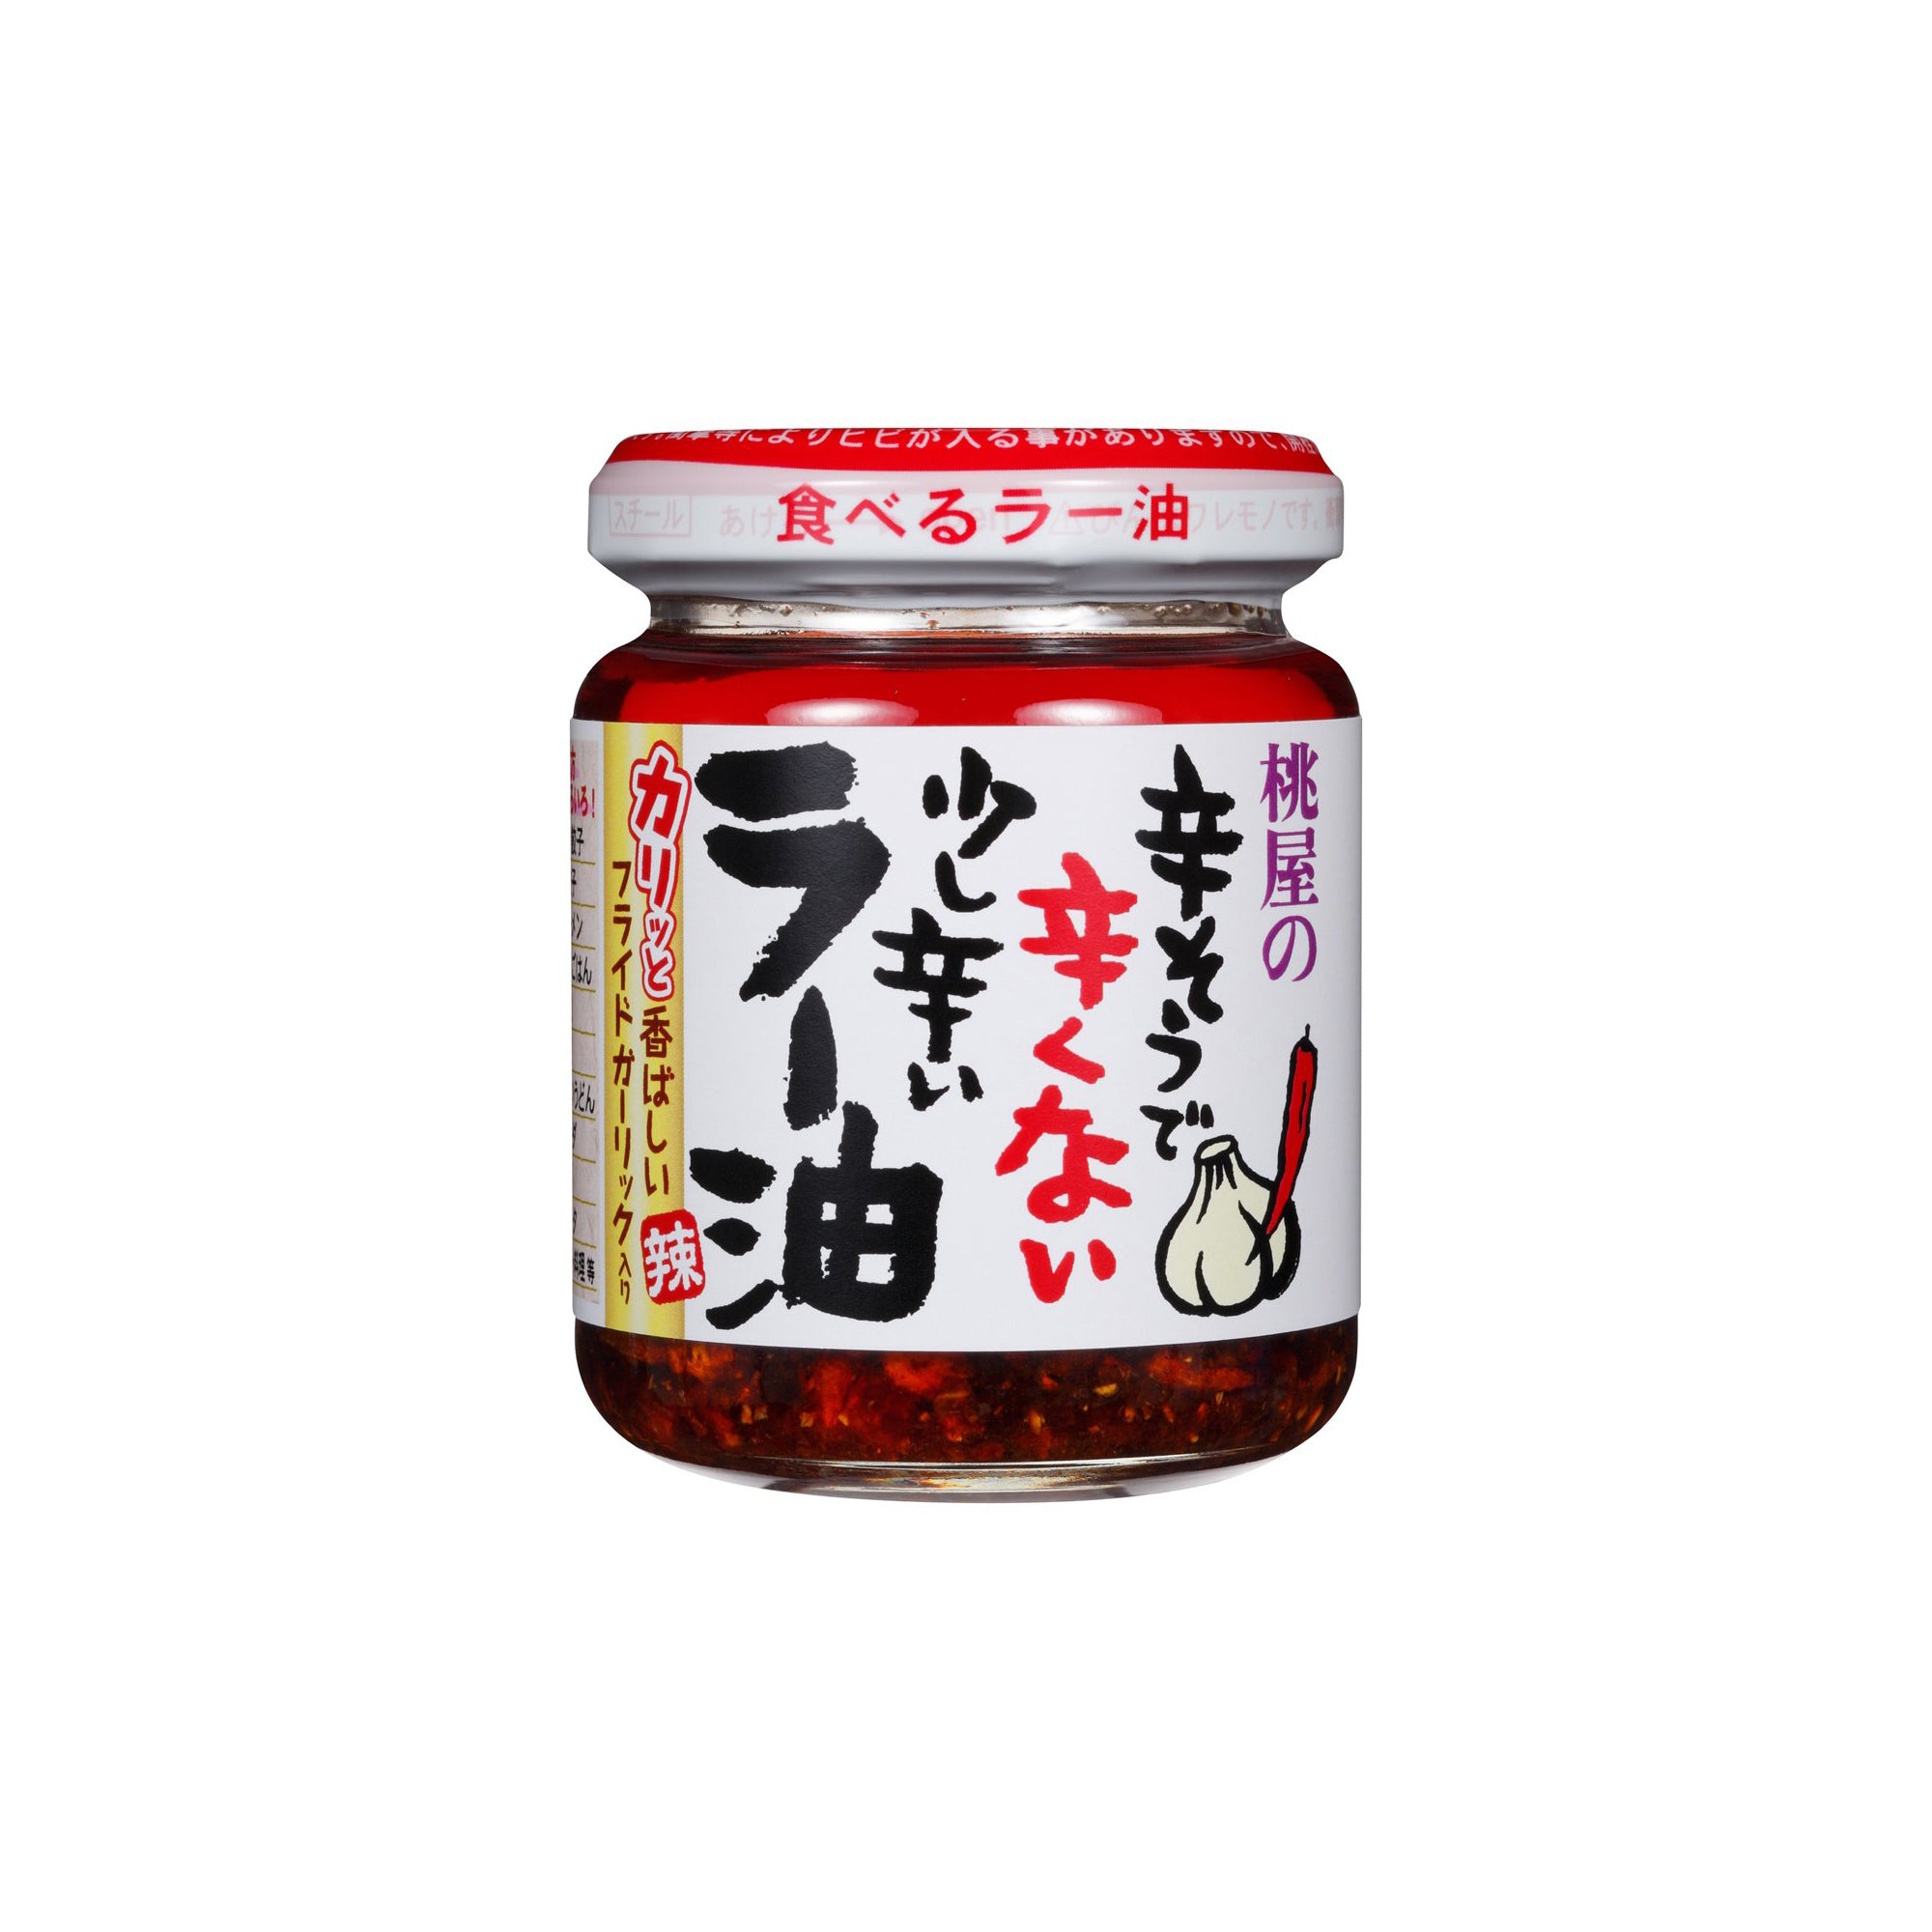 Momoya Chili Oil with Fried Garlic Taberu Layu Hot Sauce Momoya   